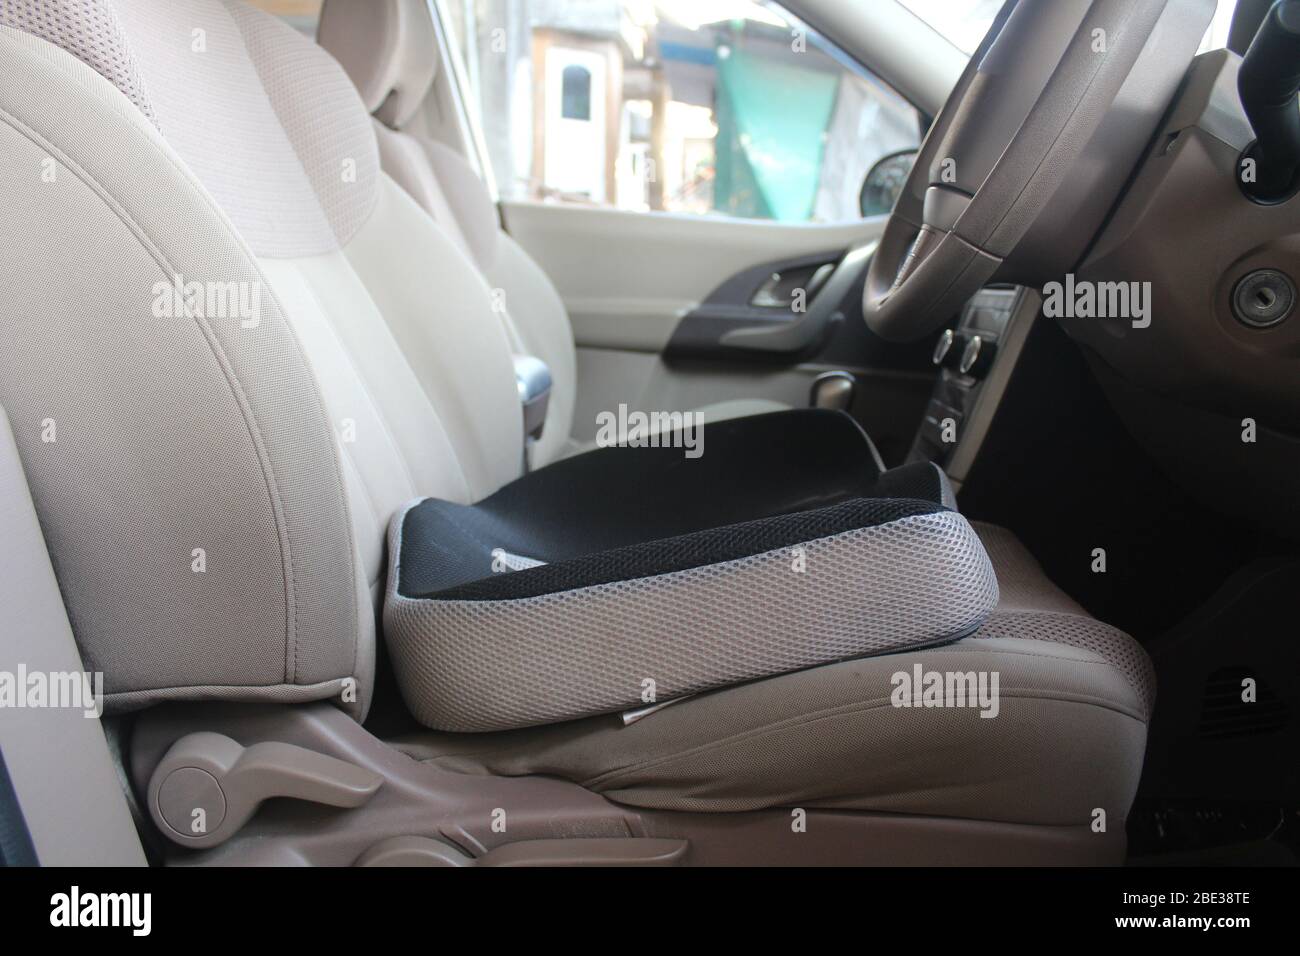 https://c8.alamy.com/comp/2BE38TE/memory-foam-sciatica-cushion-in-car-driver-seat-2BE38TE.jpg